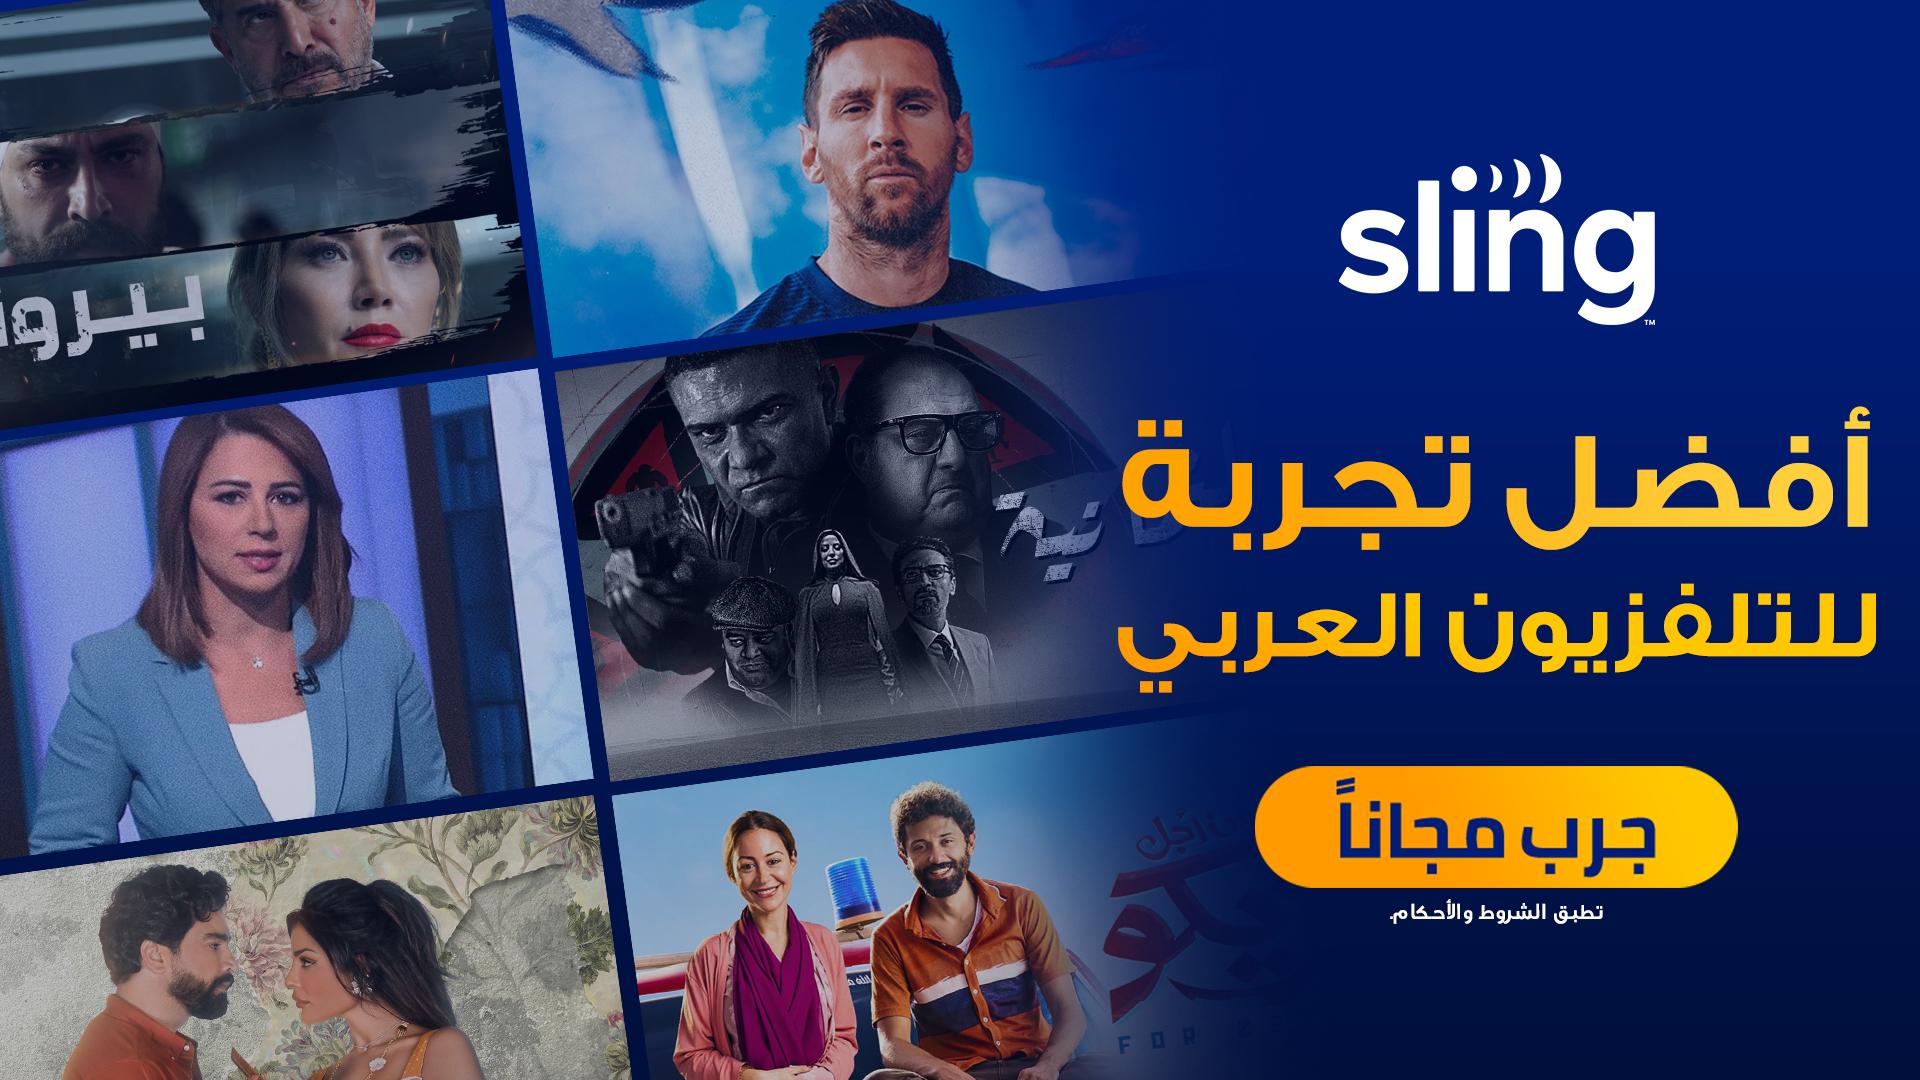 تعيد قناة الجزيرة إطلاق خدمة البث المباشر العربية “Sling” للمشاهدين الأمريكيين